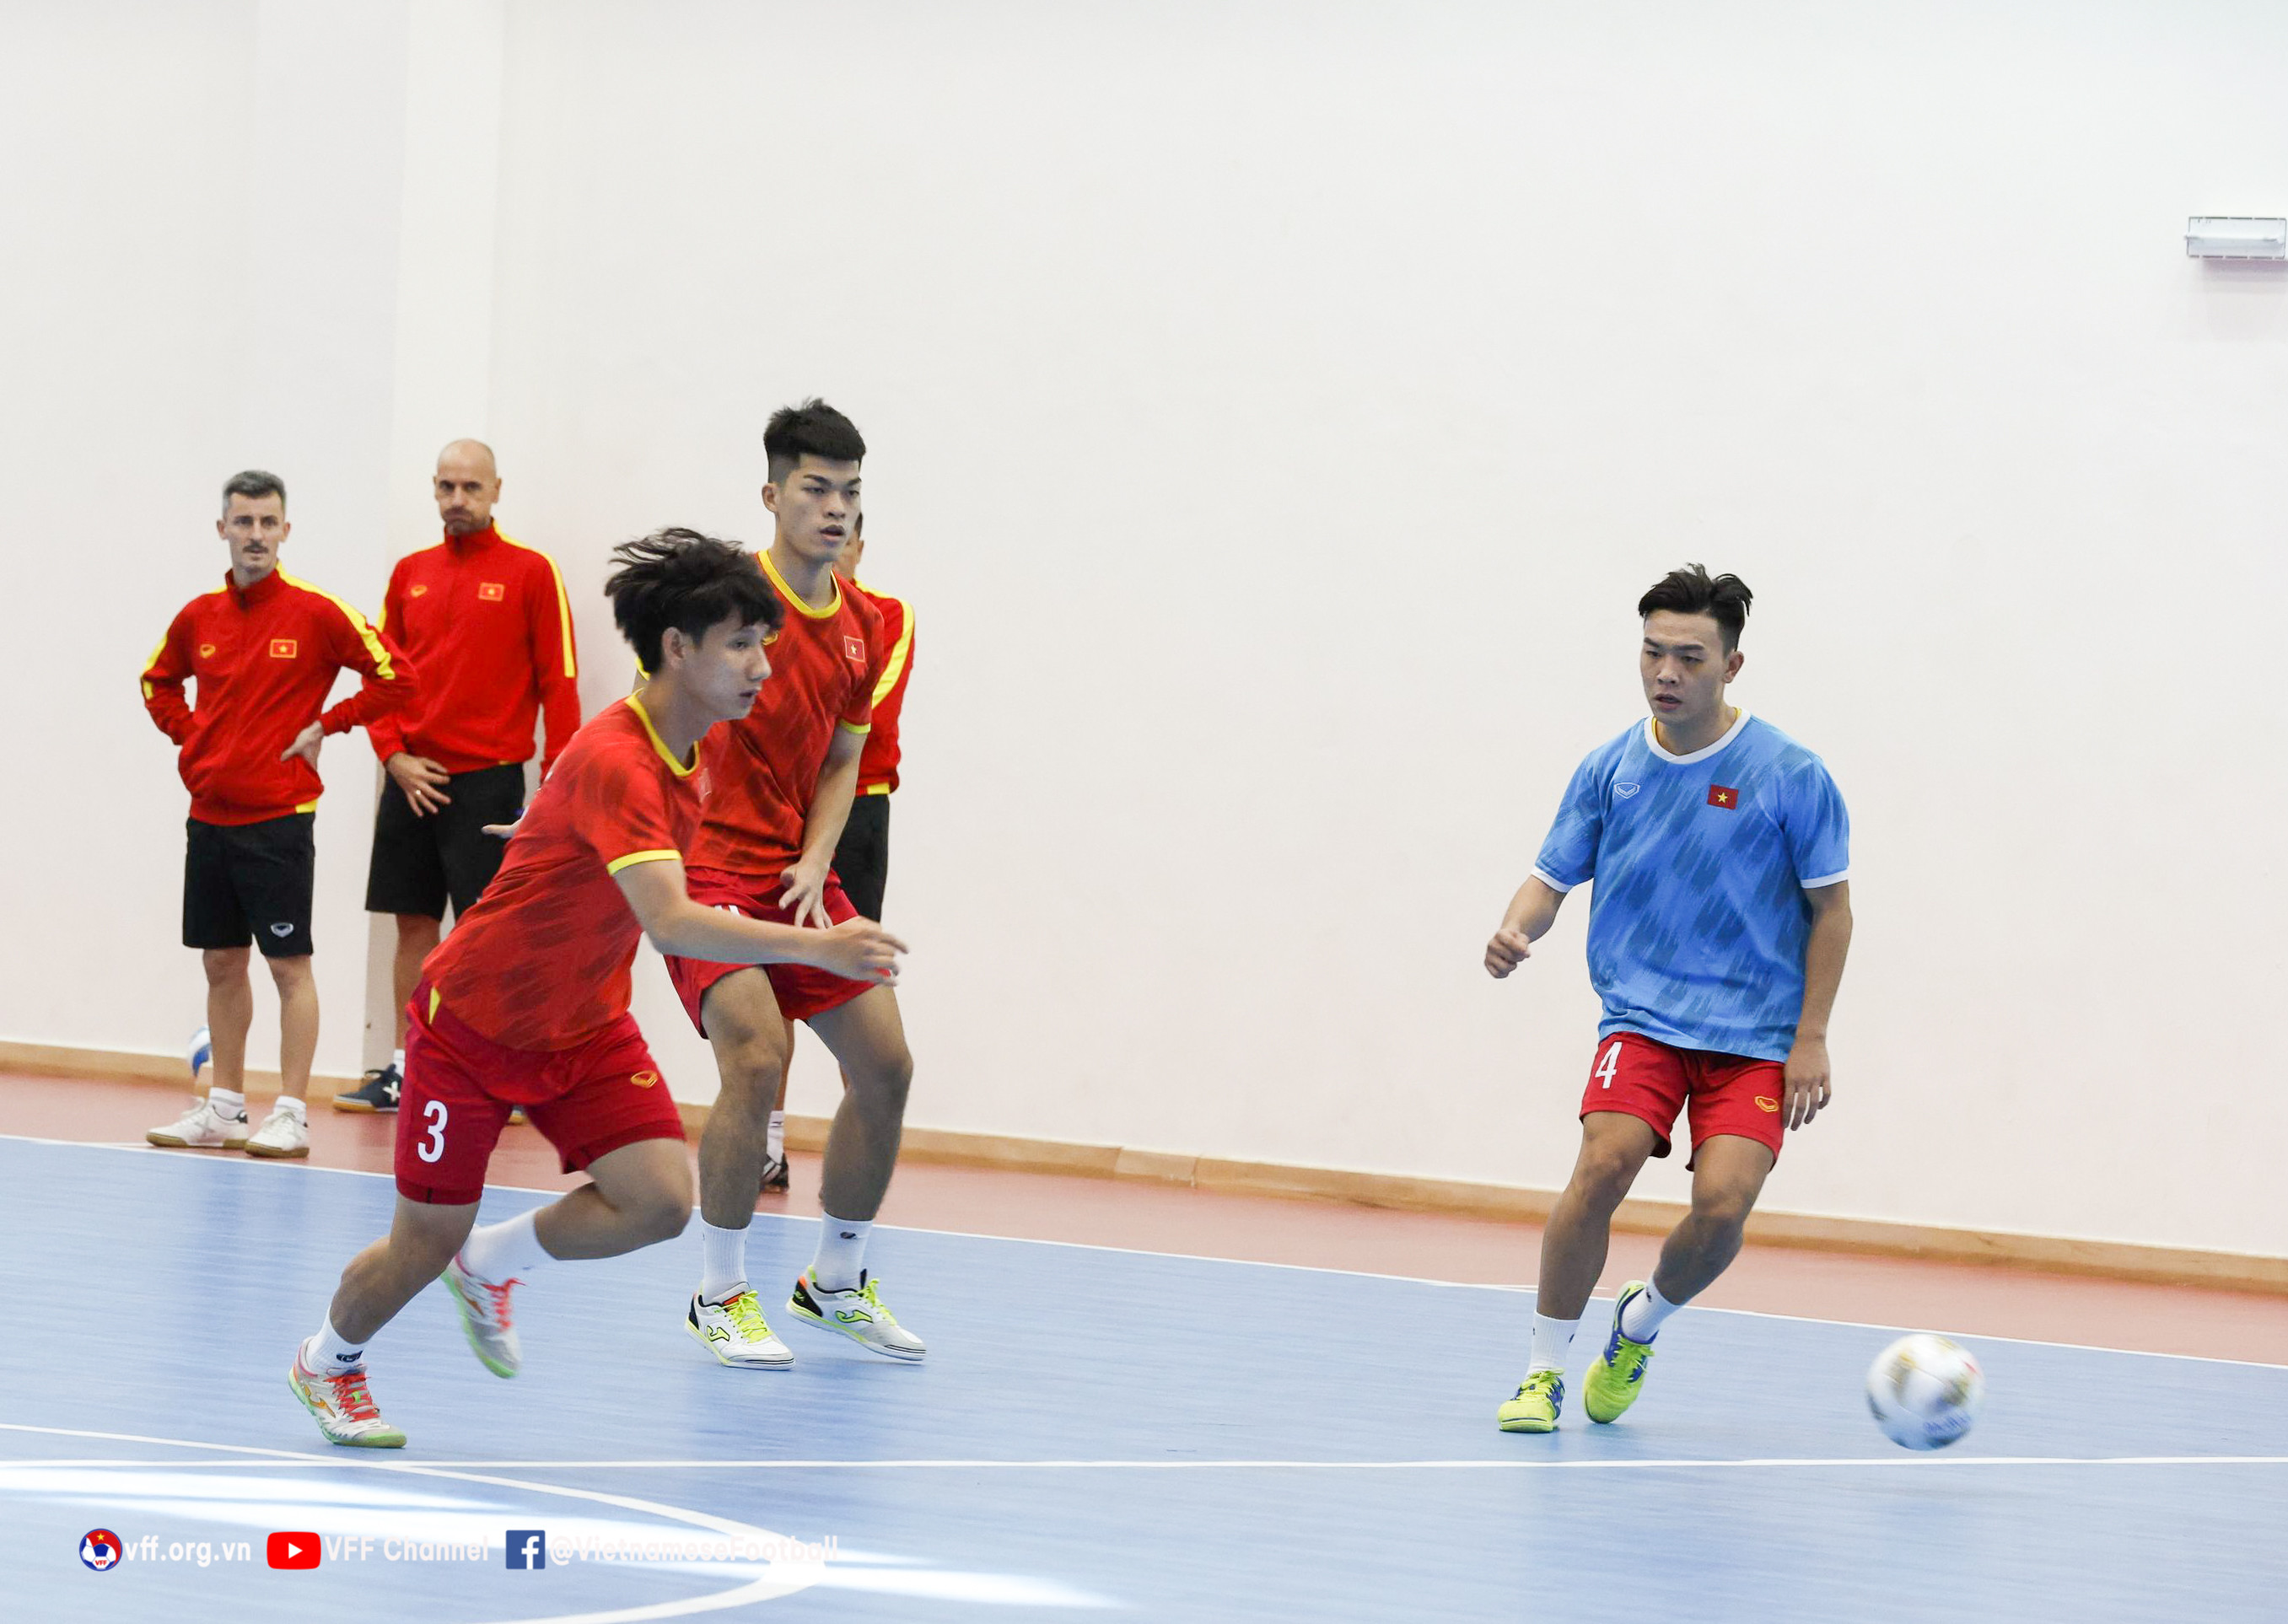 Tuyển futsal Việt Nam nhận tin vui, chờ đấu Hàn Quốc